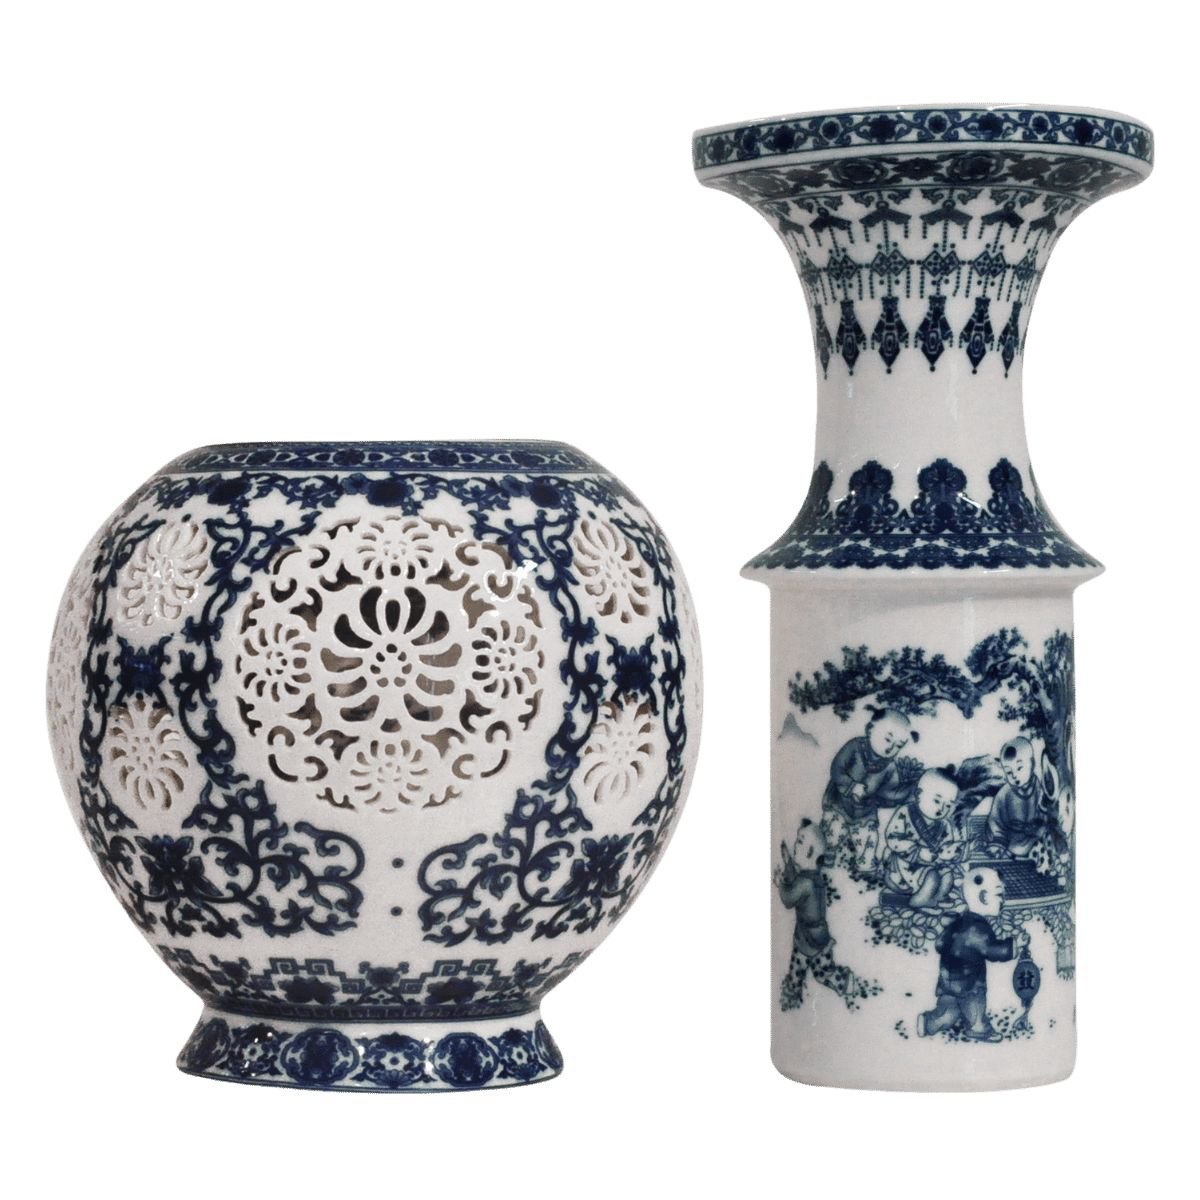 Vaso Em Porcelana Chinesa Vazada, Conjunto De 2 Peças, Cor Branca E Azul (28,5 X 18 Cm) - 2